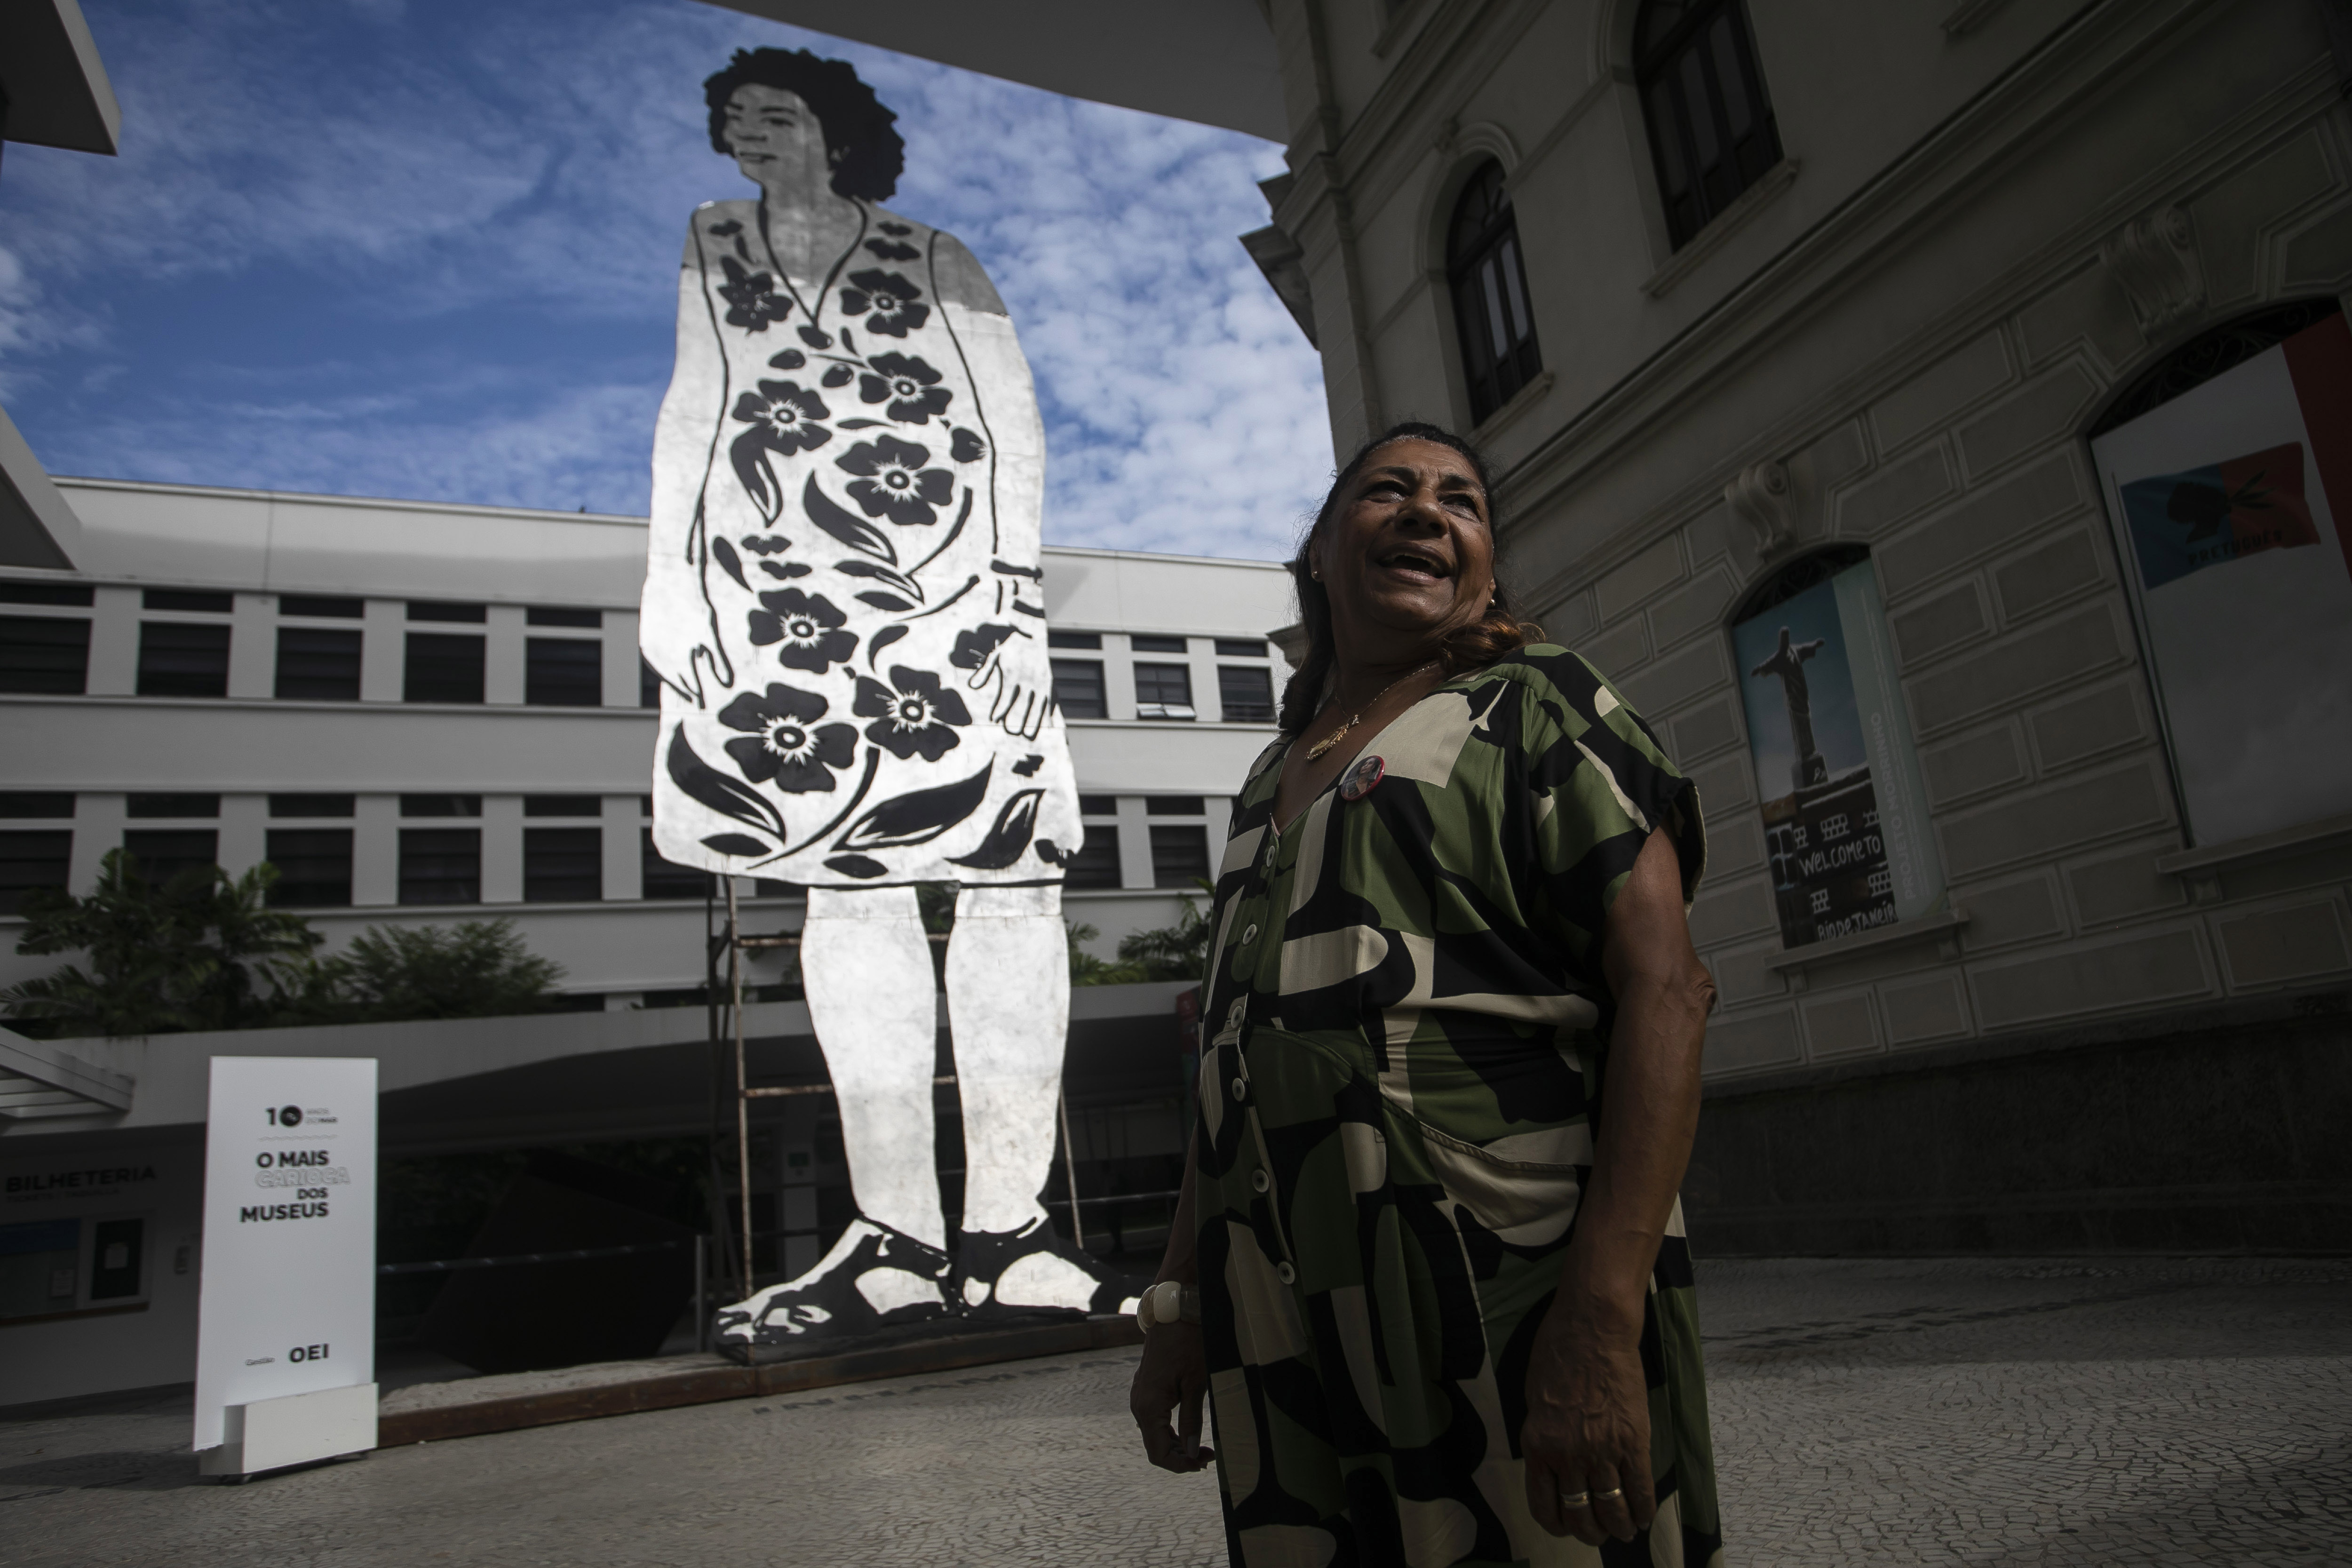 Marinette da Silva, madre de la concejal asesinada Marielle Franco, de pie junto a un cartón enorme que muestra a Franco, durante un tributo para conmemorar el 5to aniversario de su asesinato, en el Museo de Arte de Río de Janeiro, el martes 14 de marzo de 2023. (AP Foto/Bruna Prado)